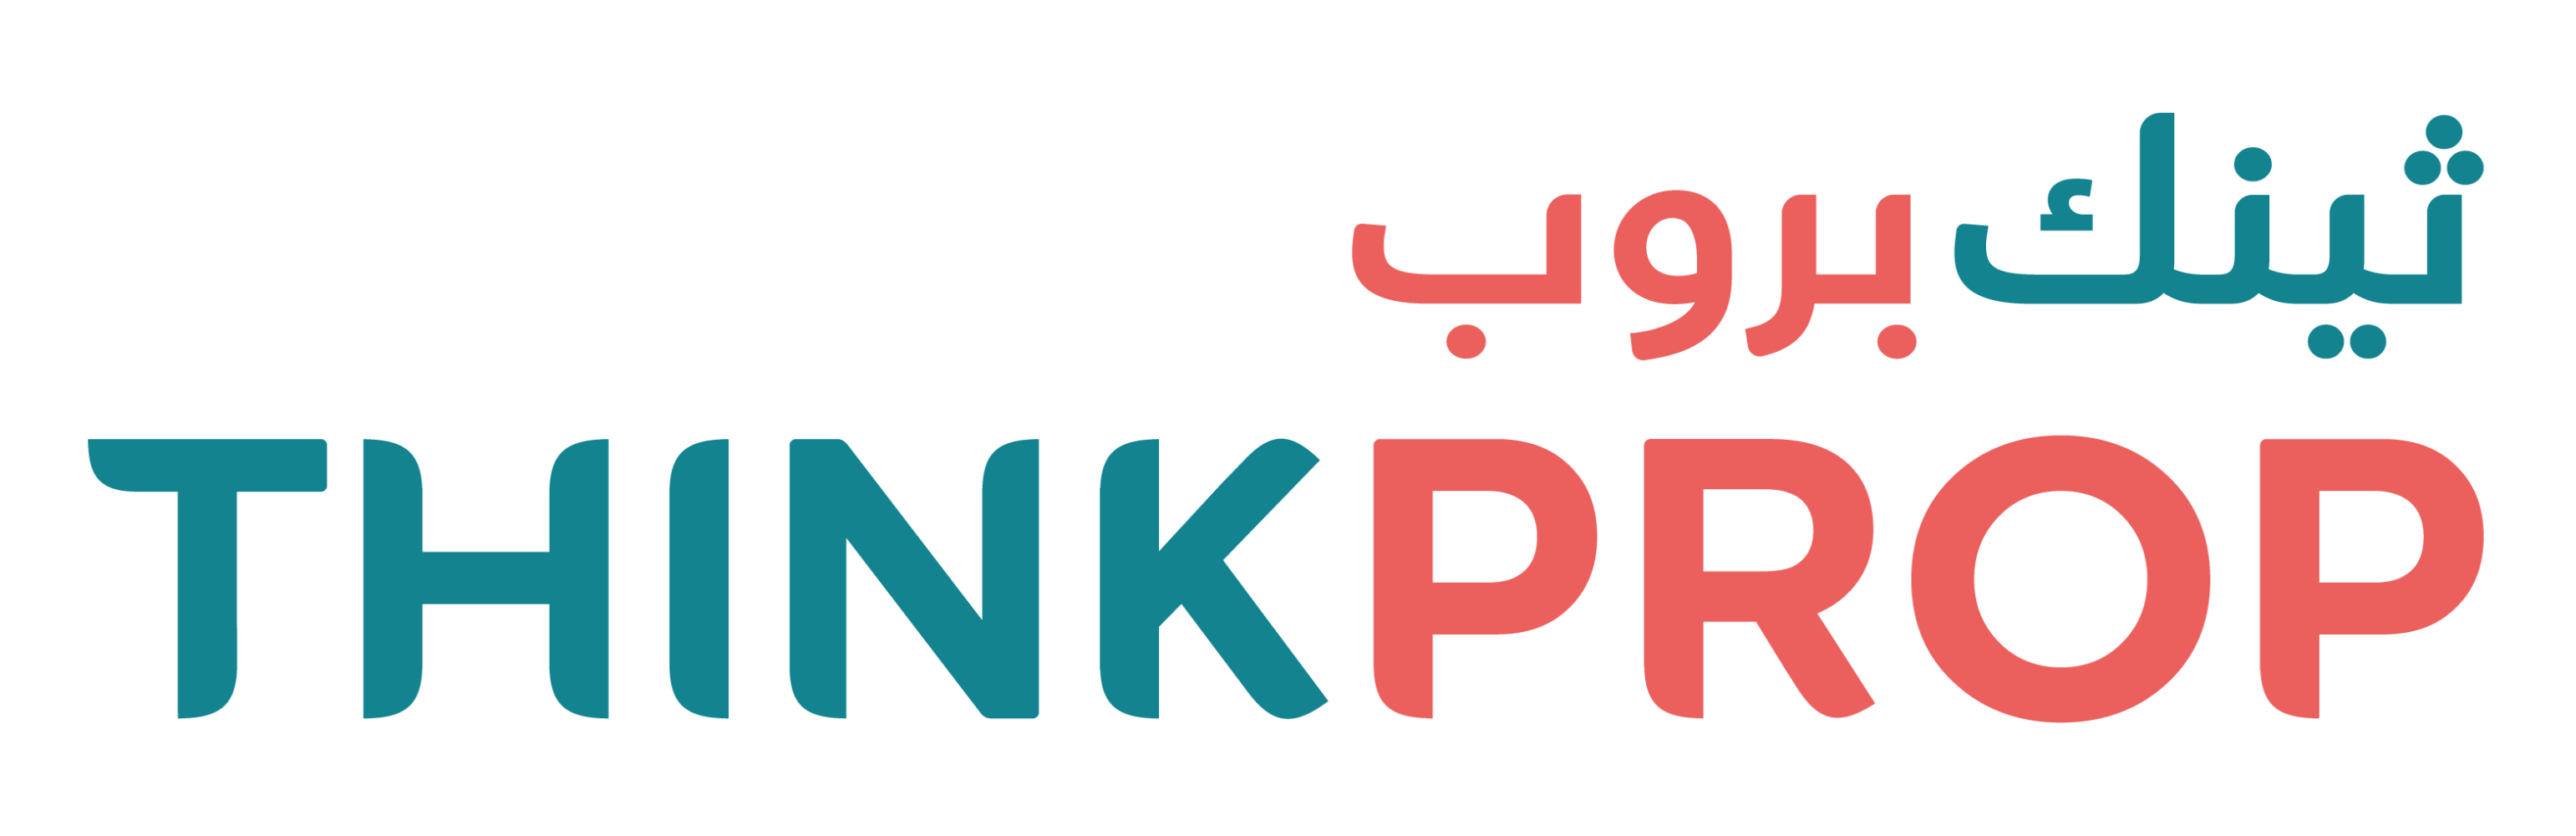 thinkprop-logo